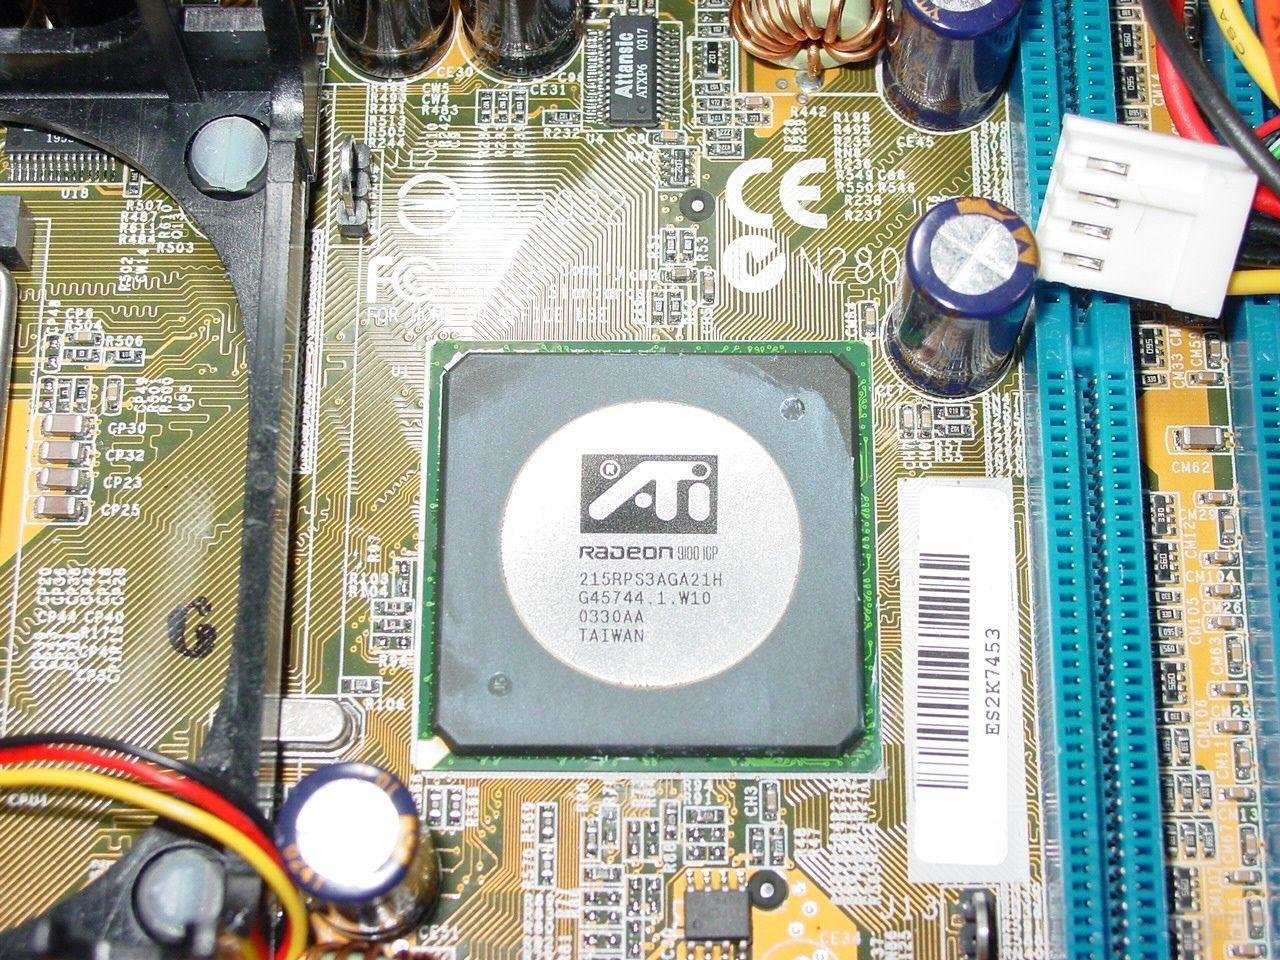 ATi Radeon 9100 IGP